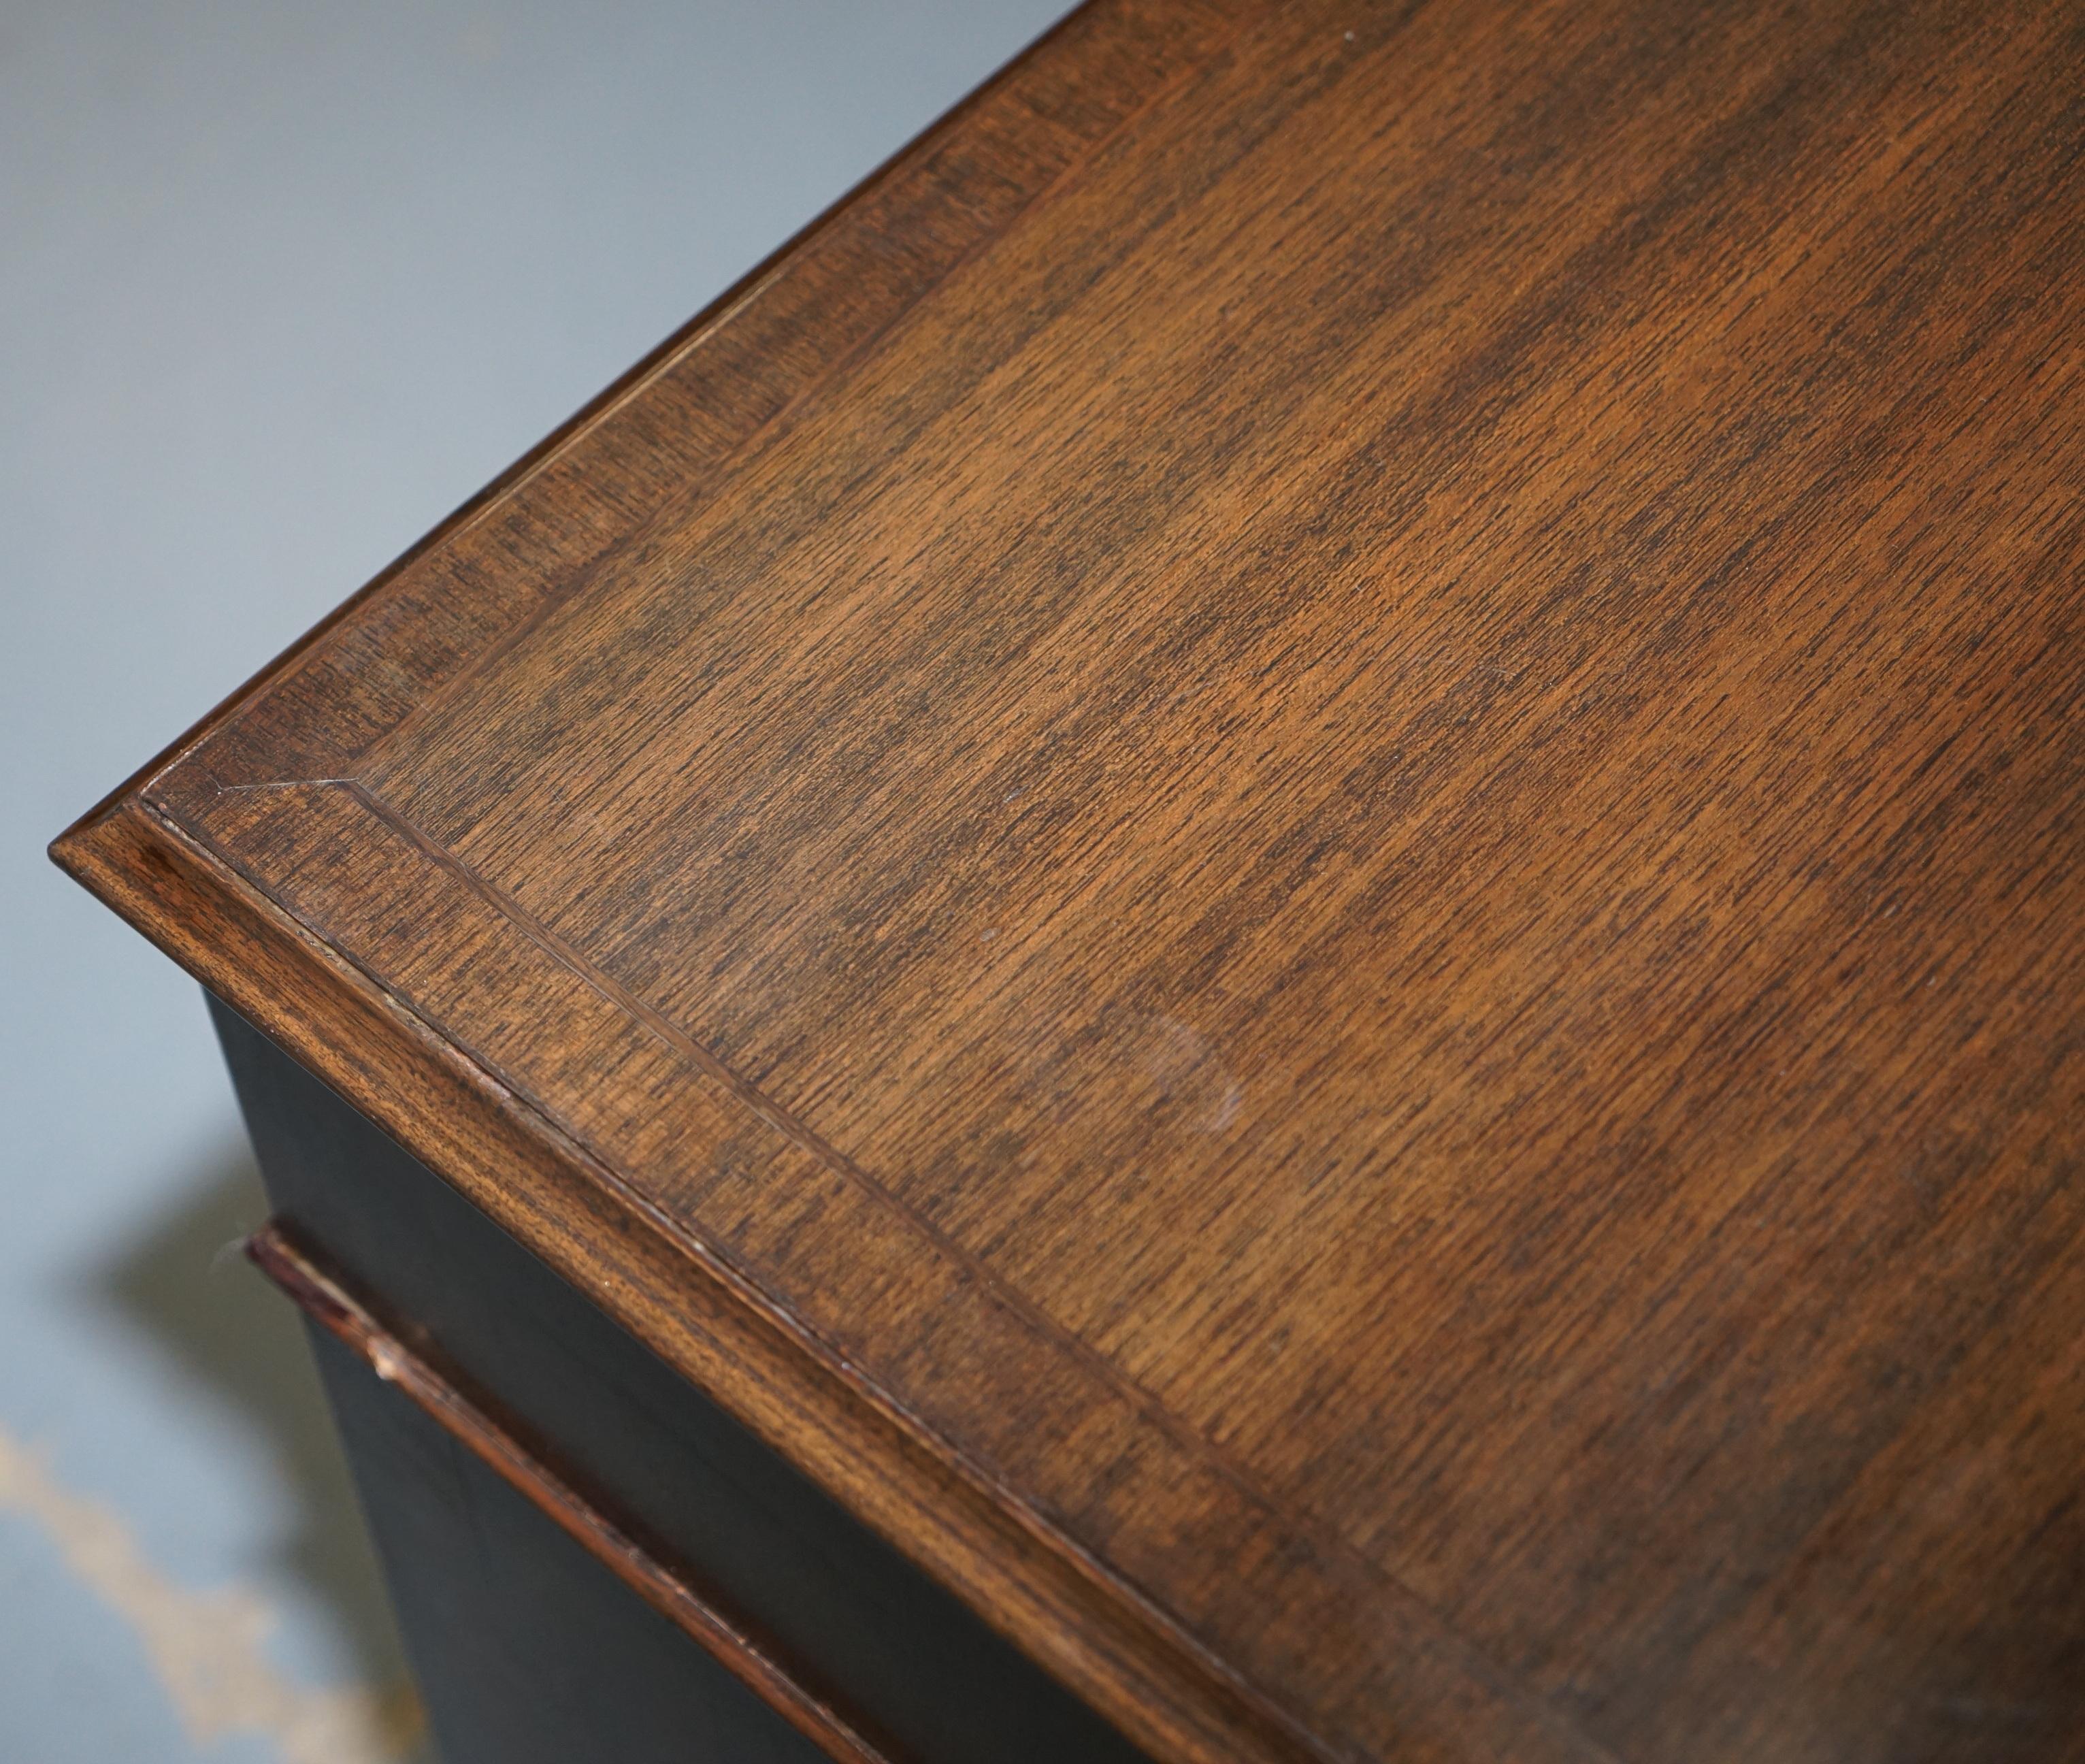 Vintage Stunning Large Solid Hardwood Twin Pedestal Partner Desk Rare Find 2